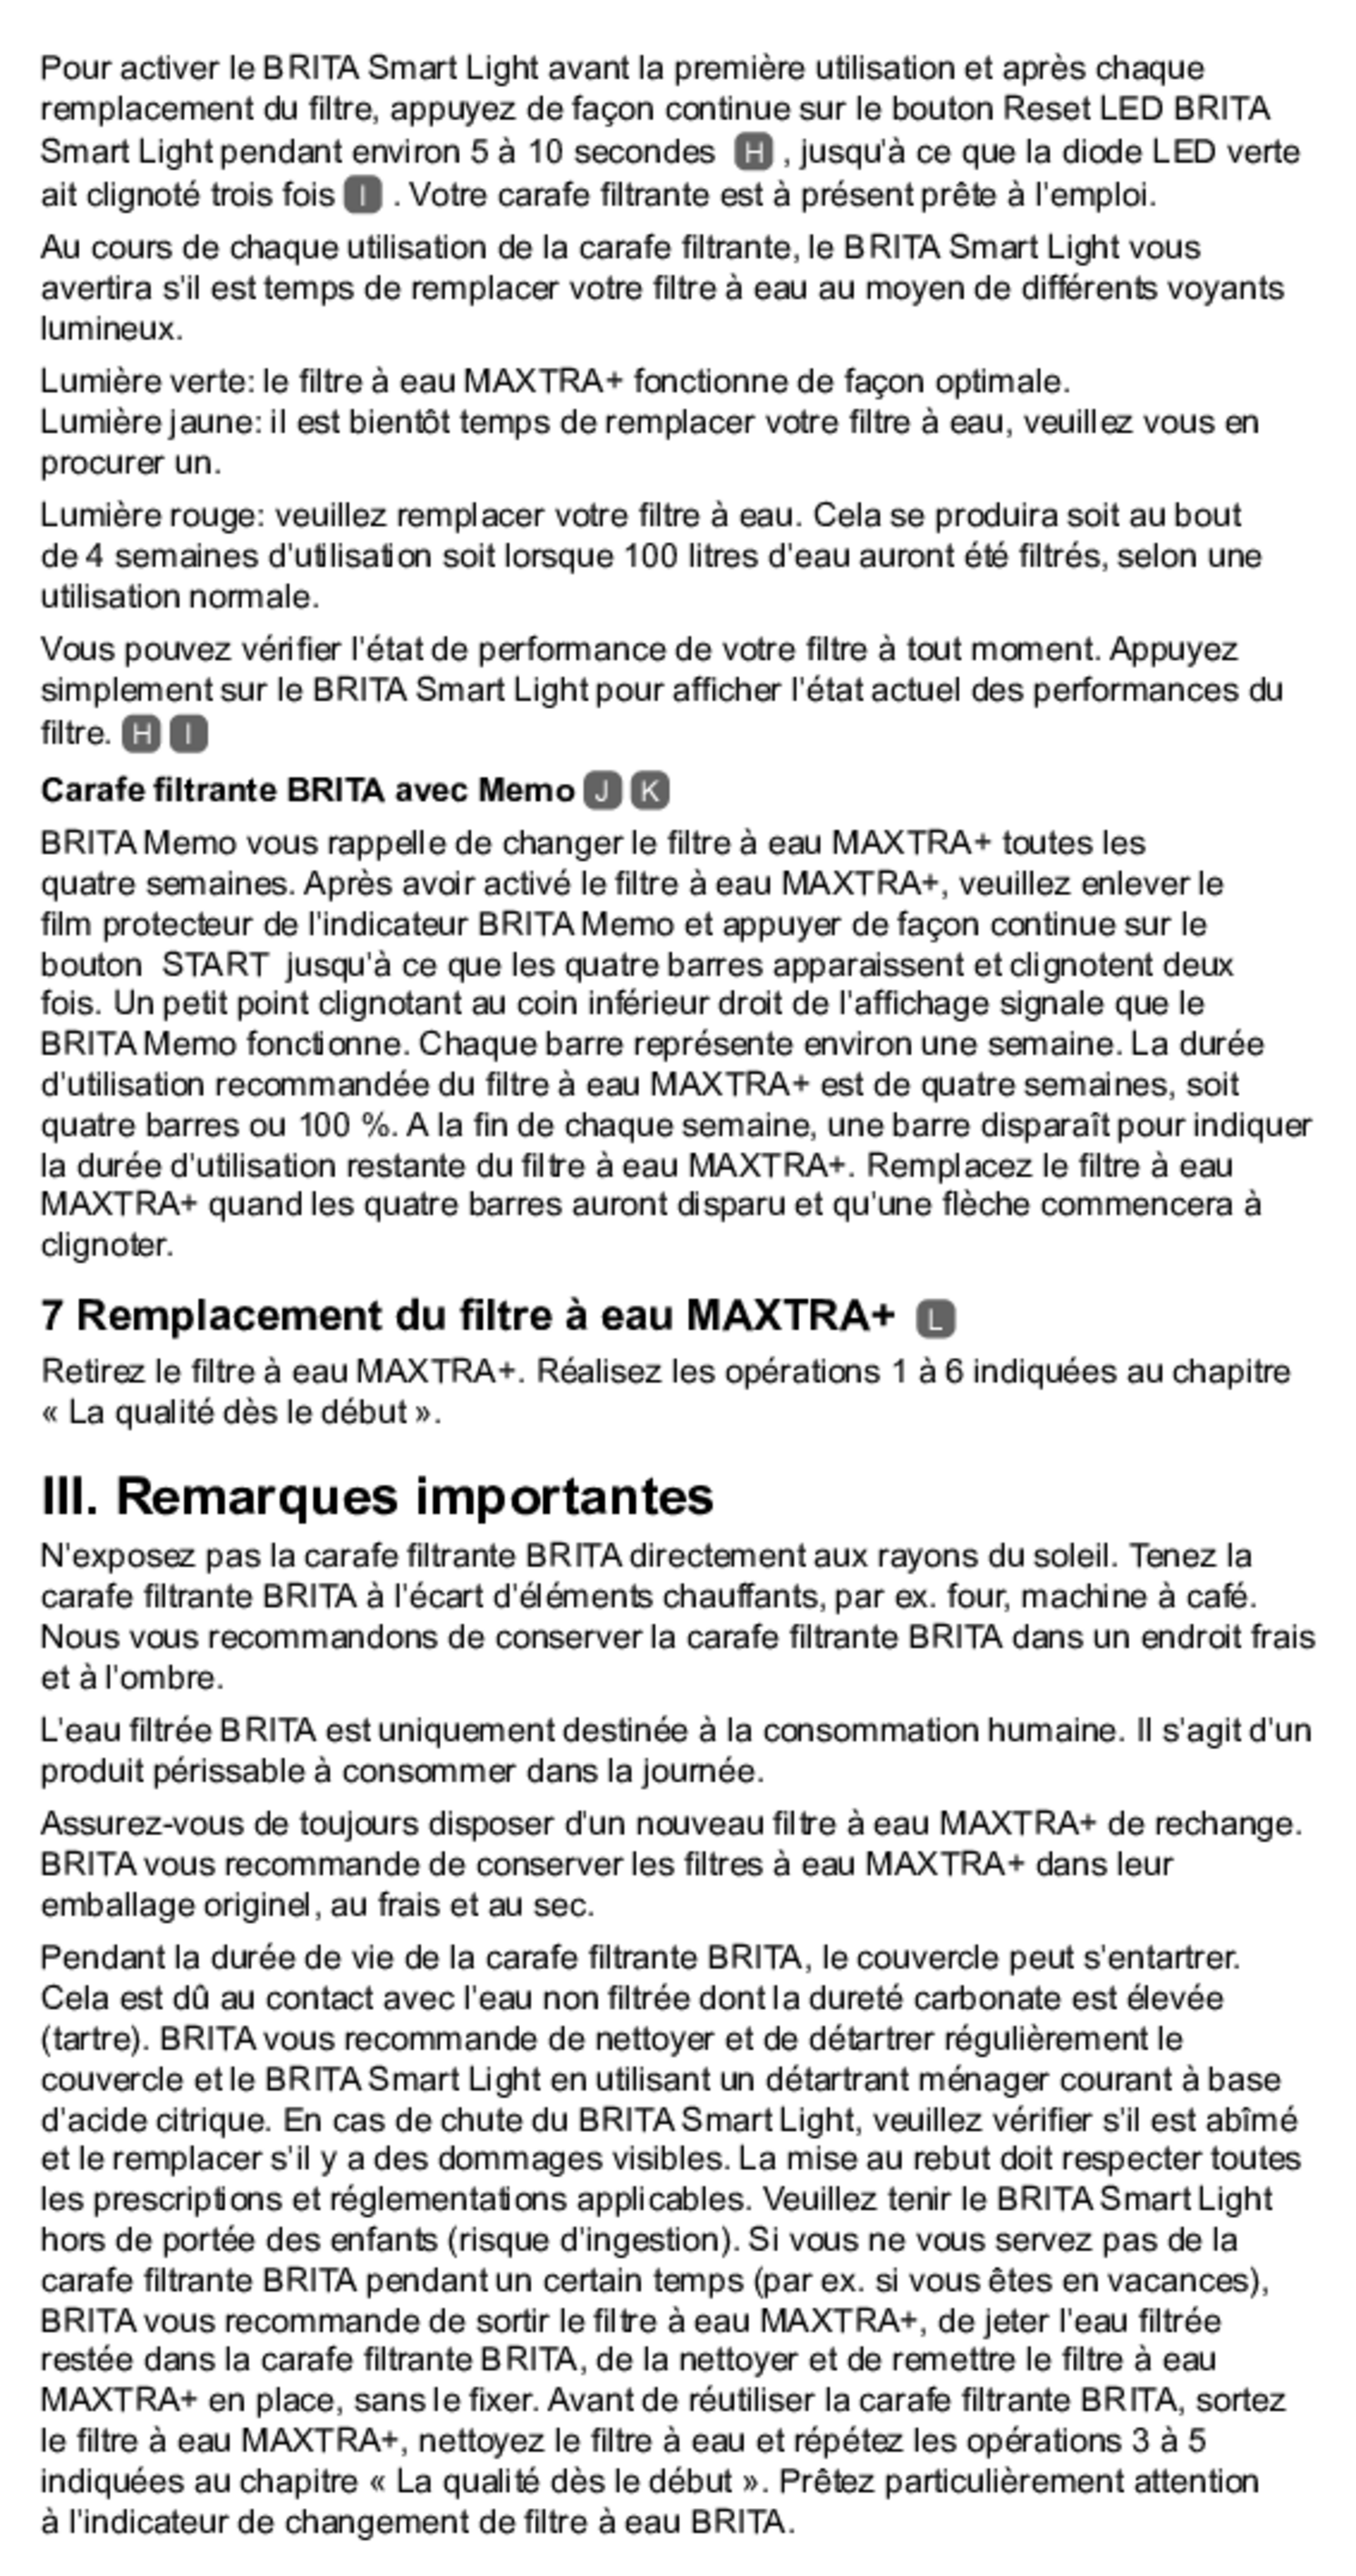 Filterpatroon Maxtra Pro afbeelding van document #11, gebruiksaanwijzing